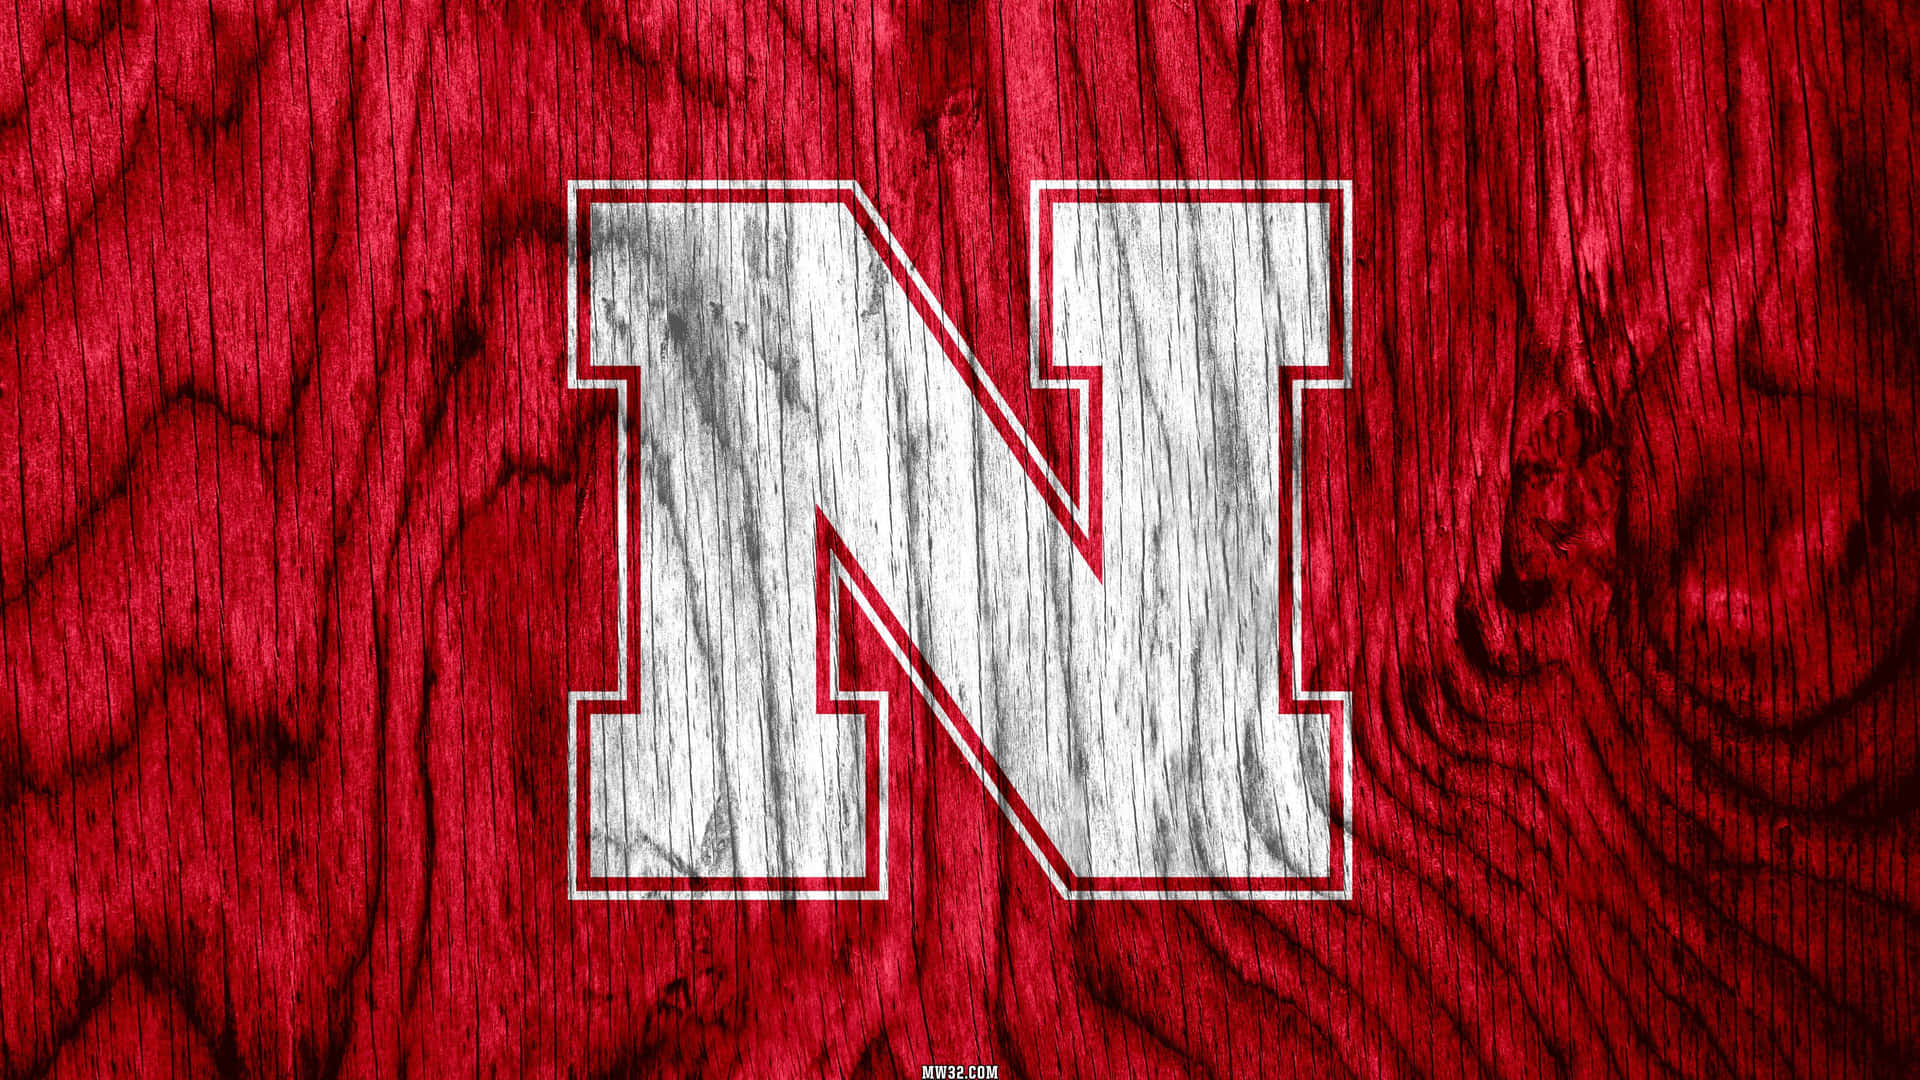 nebraska football logo